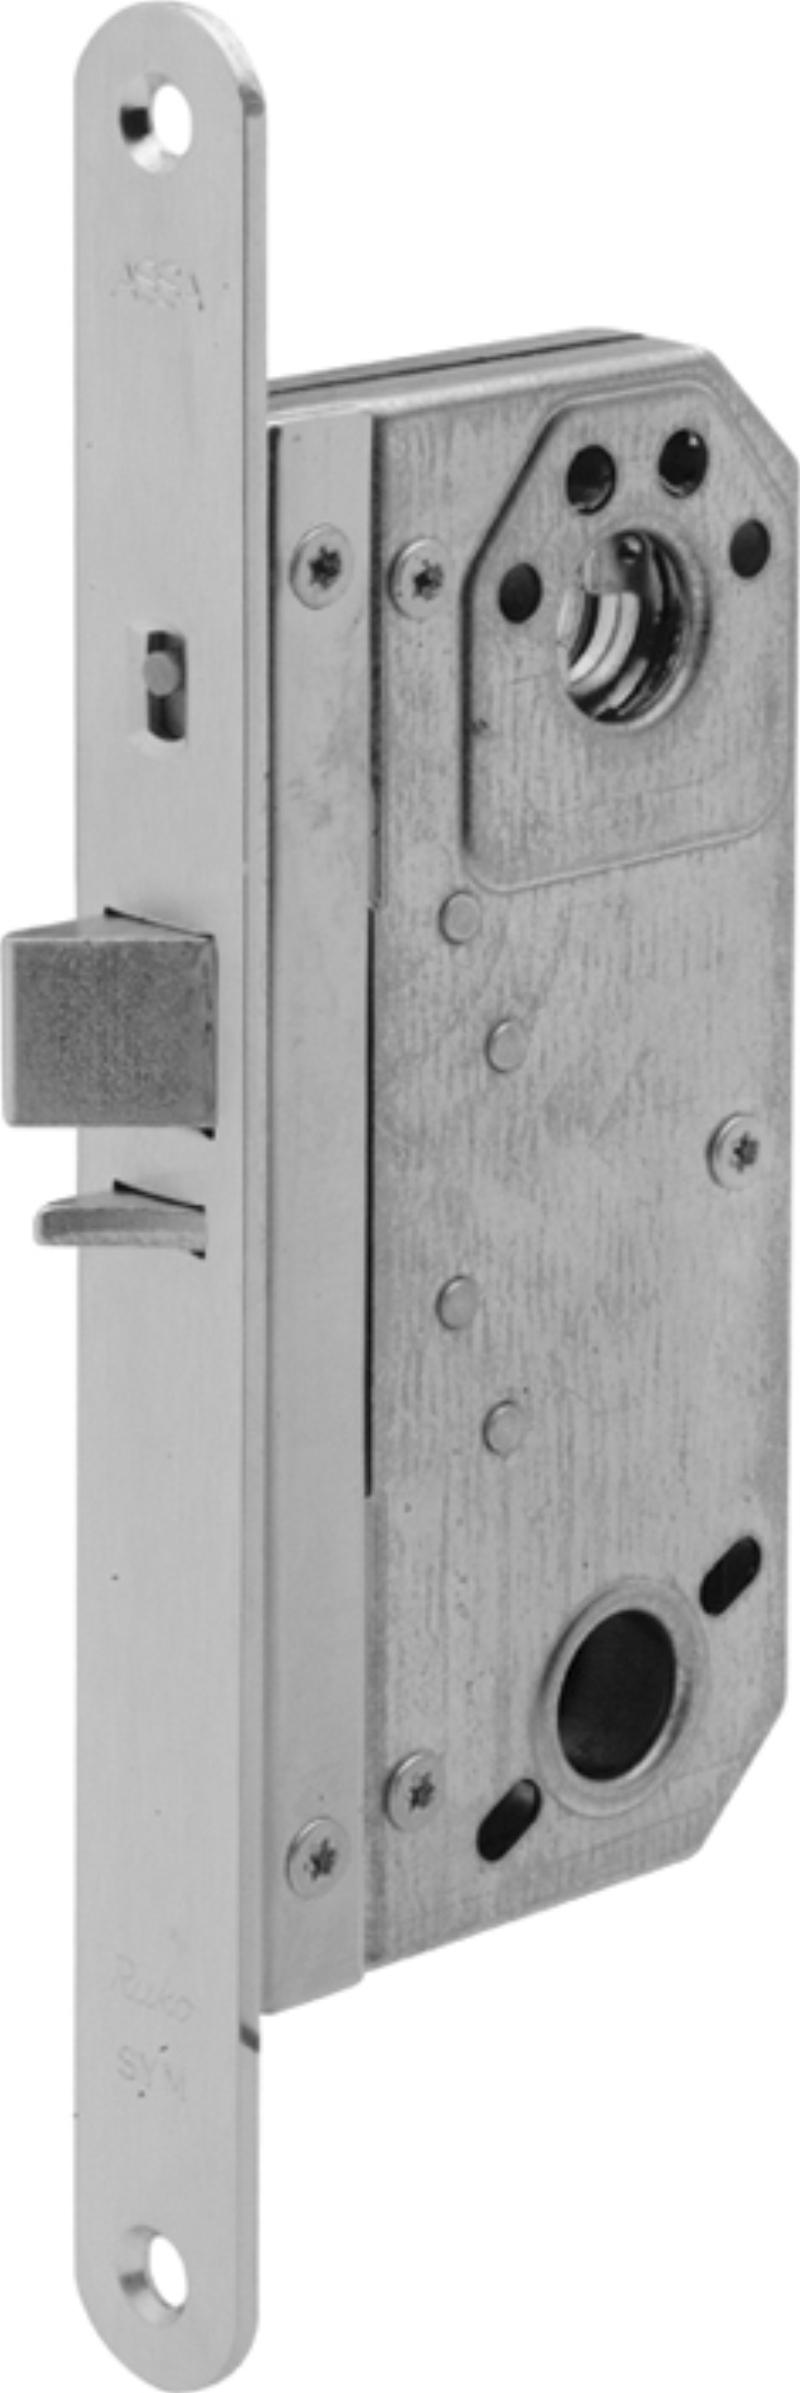 Assa lock box 5584 w/tin